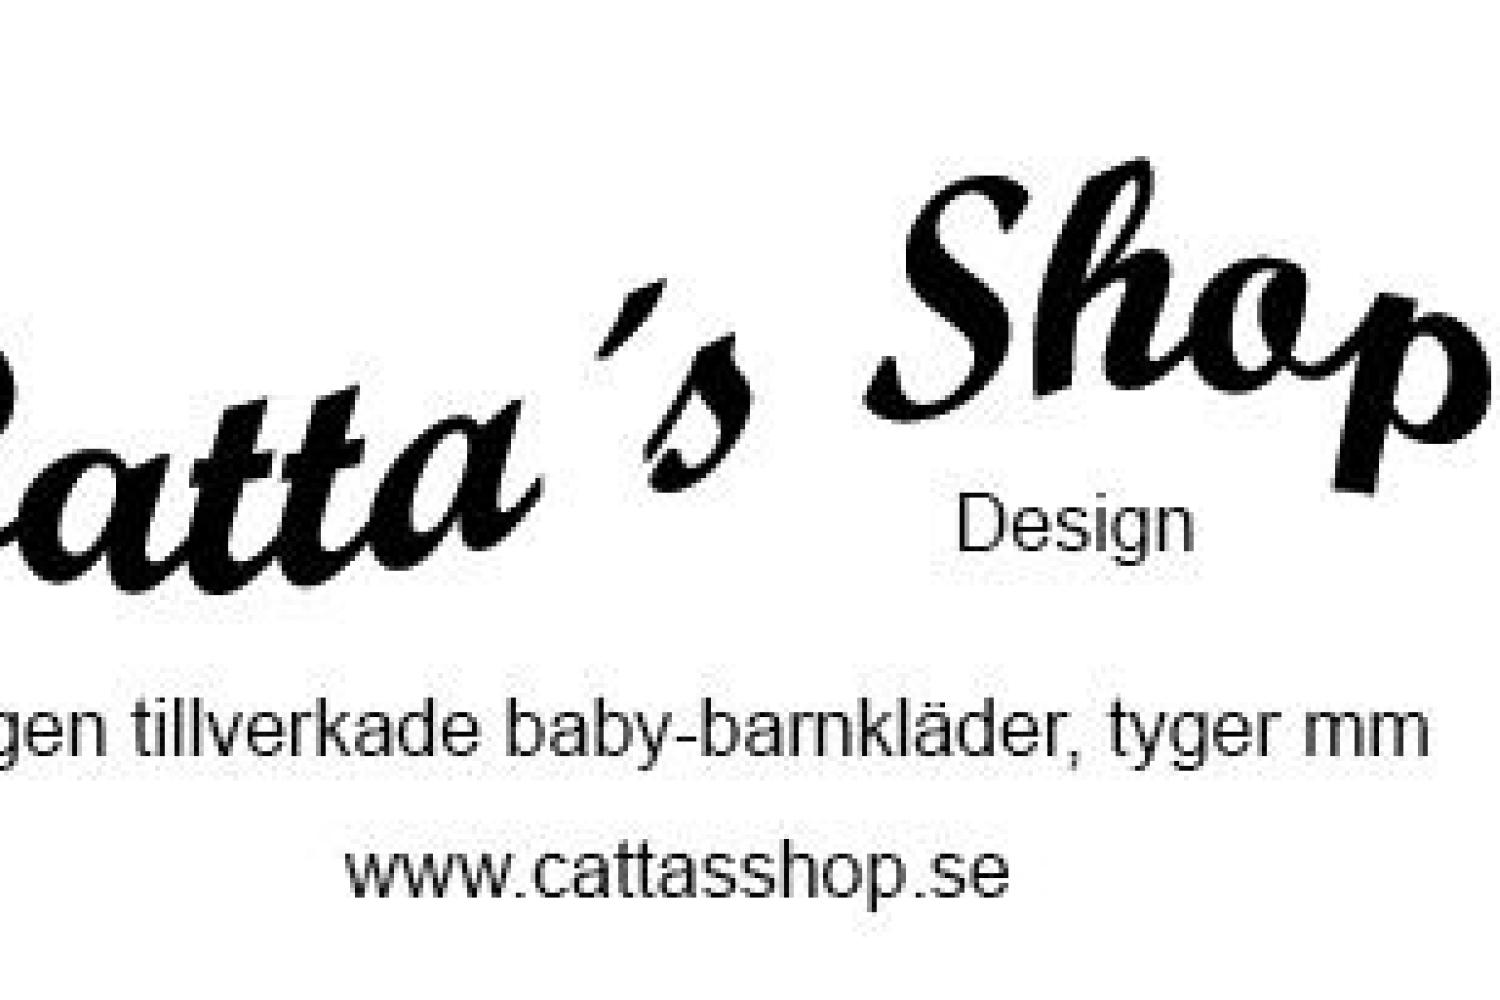 Catta's Shop